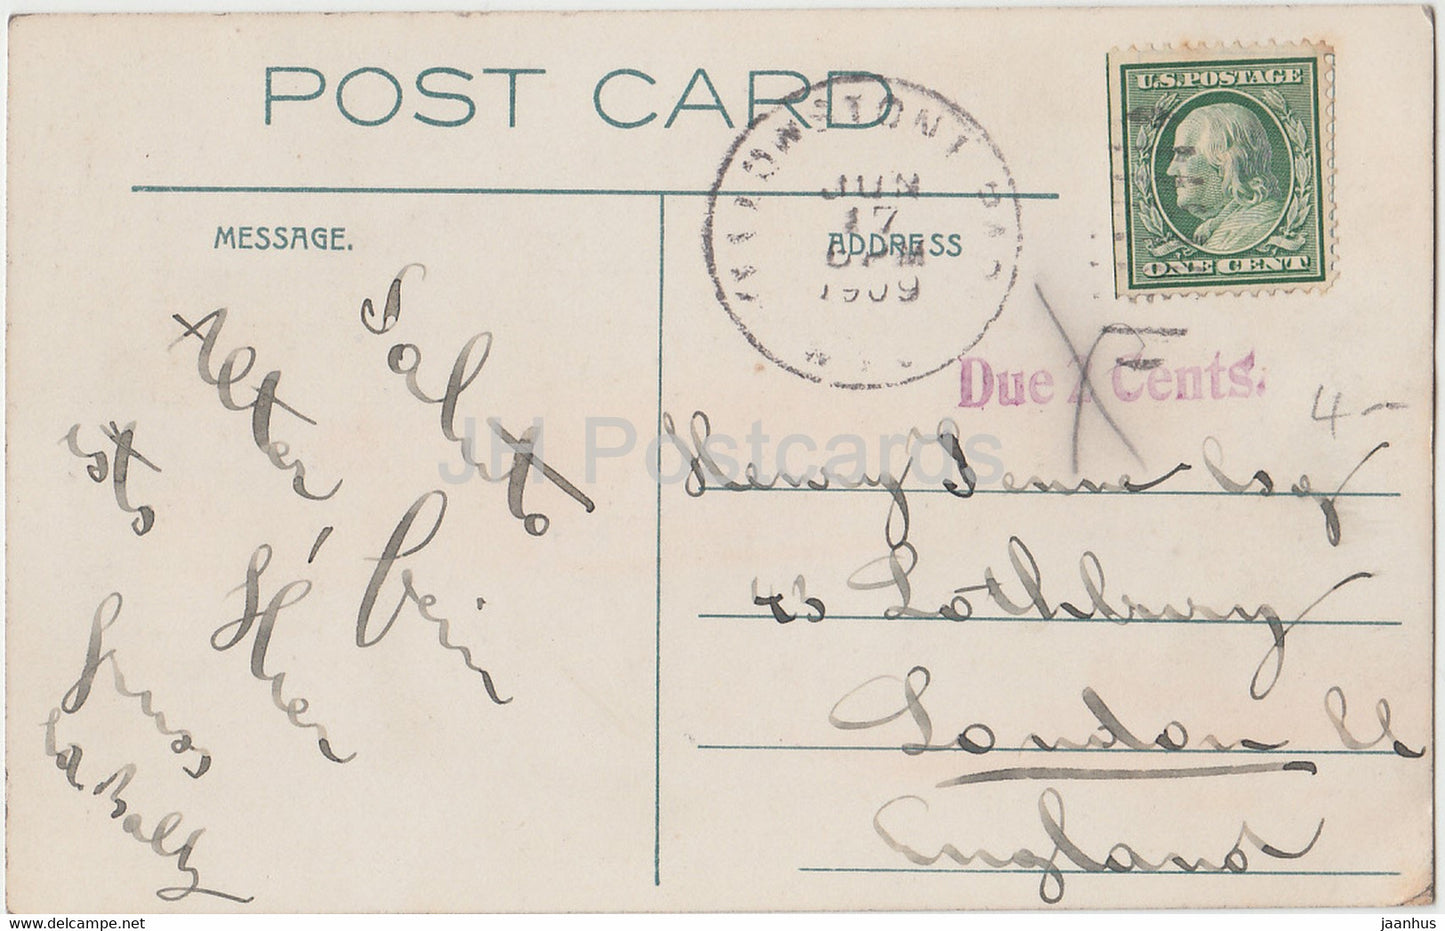 Überlauf des Excelsior-Geysirs – Yellowstone Park – 119 – alte Postkarte – 1909 – Vereinigte Staaten – USA – gebraucht